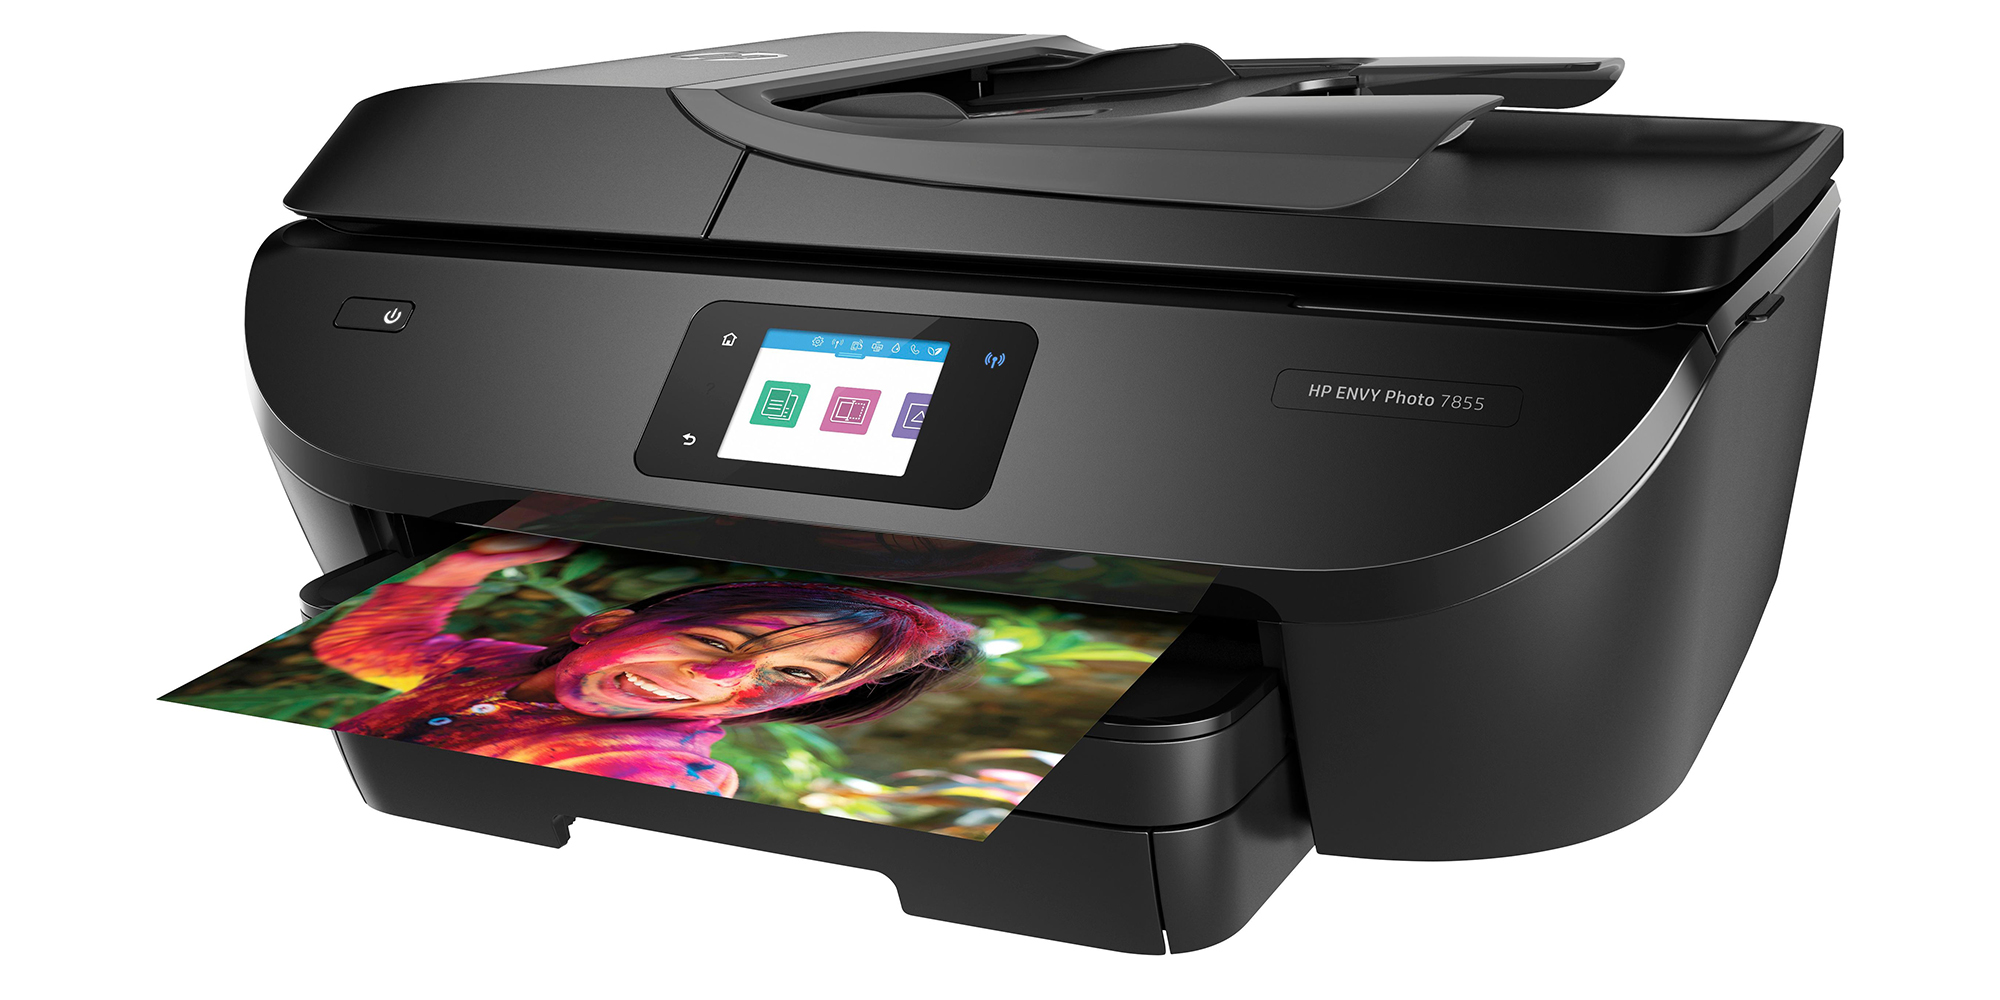 best inkjet photo printer for mac